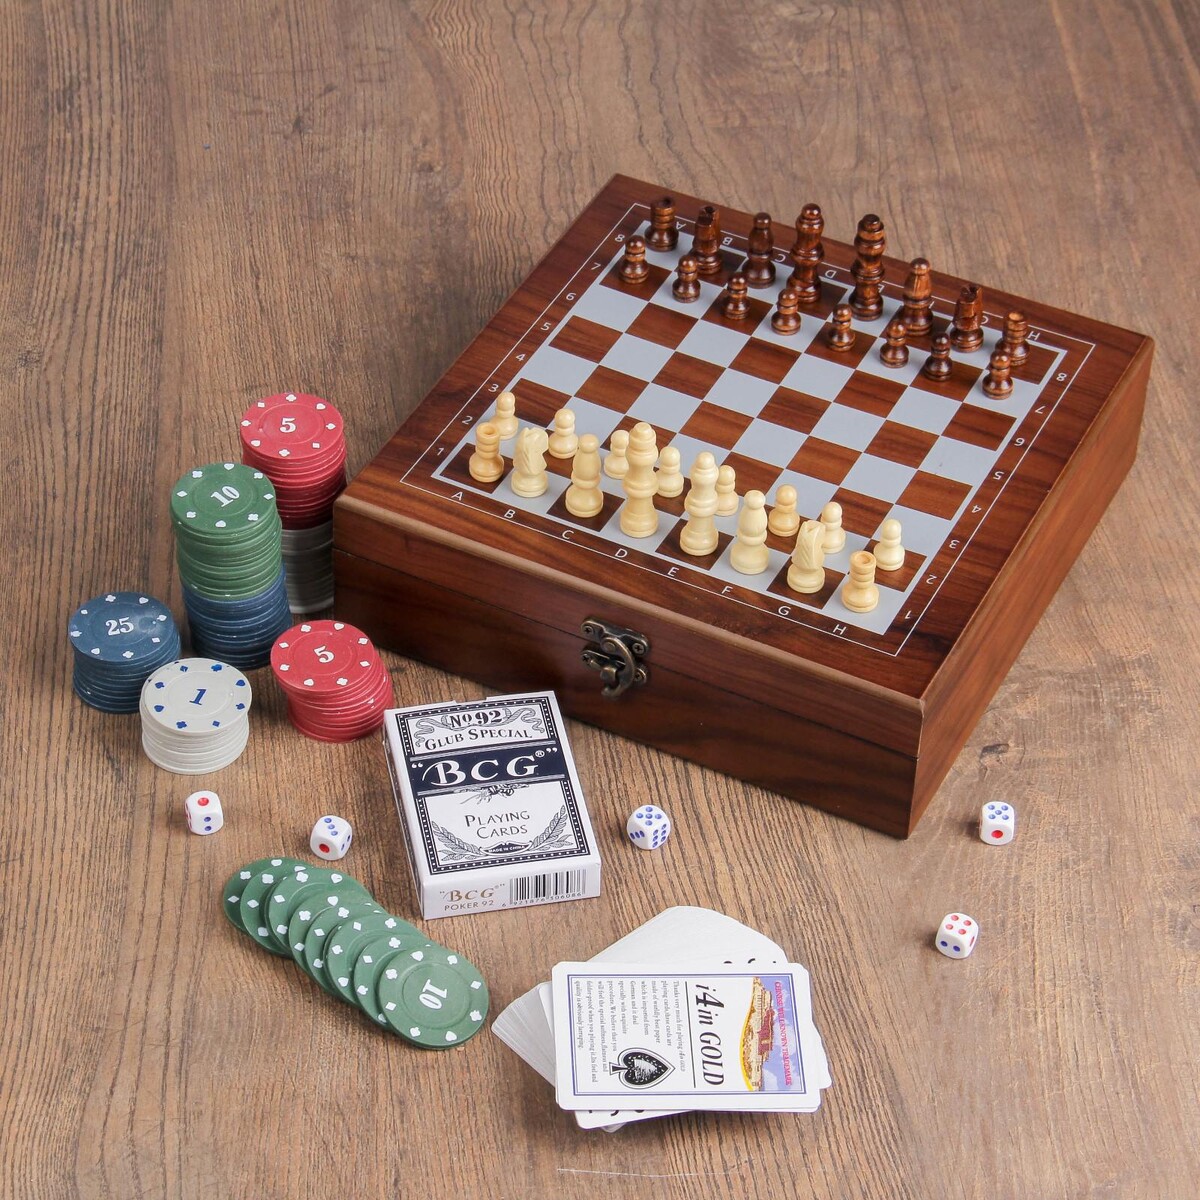 Набор 4 в 1: шахматы, покер (100 фишек, 2 колоды, кубики 5 шт), 24 х 24 см набор 7 в 1 фляжка 8 oz с гербом 4 рюмки воронка шахматы 18 х 24 см